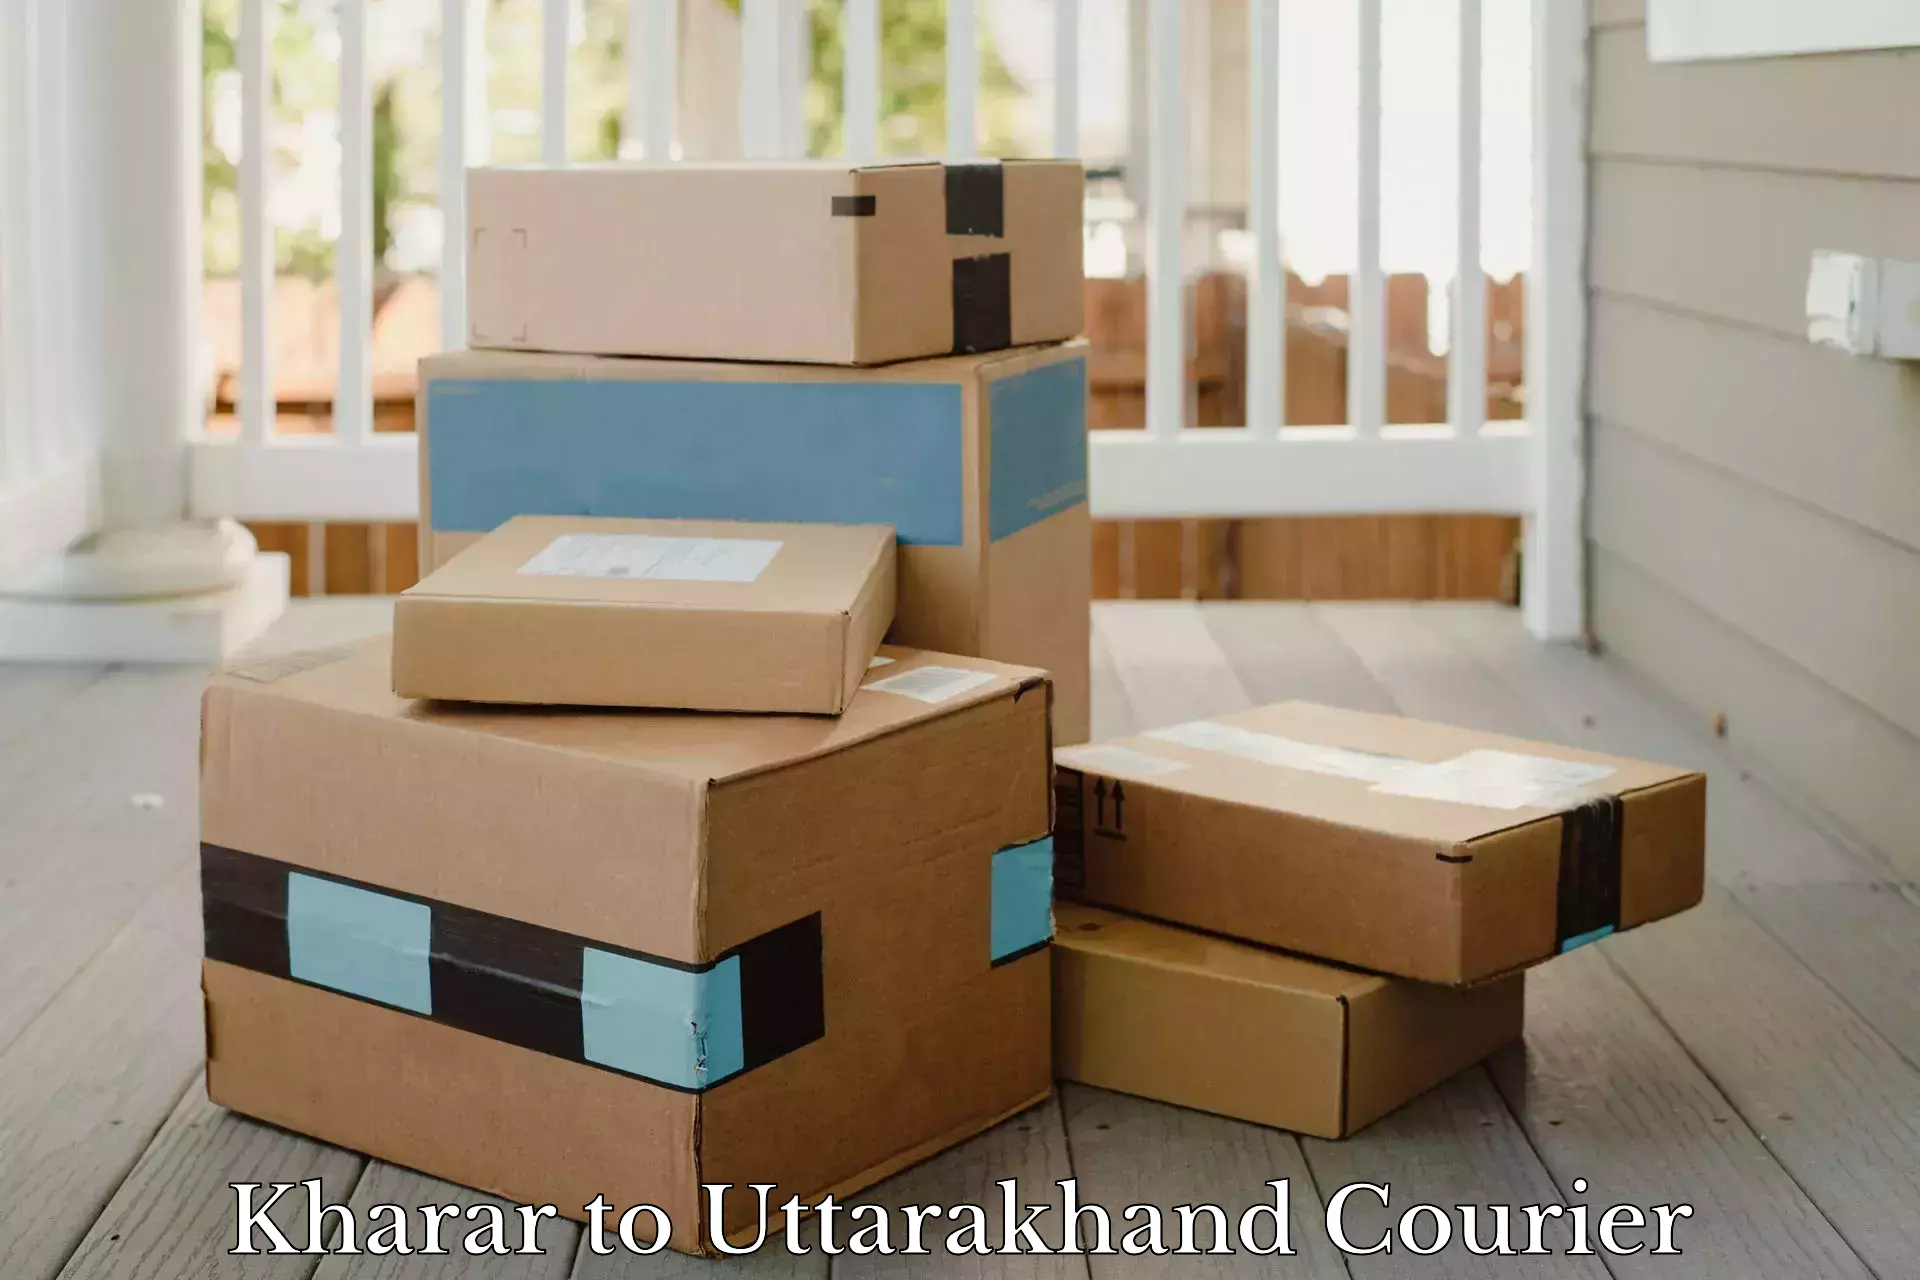 Global logistics network Kharar to Uttarakhand